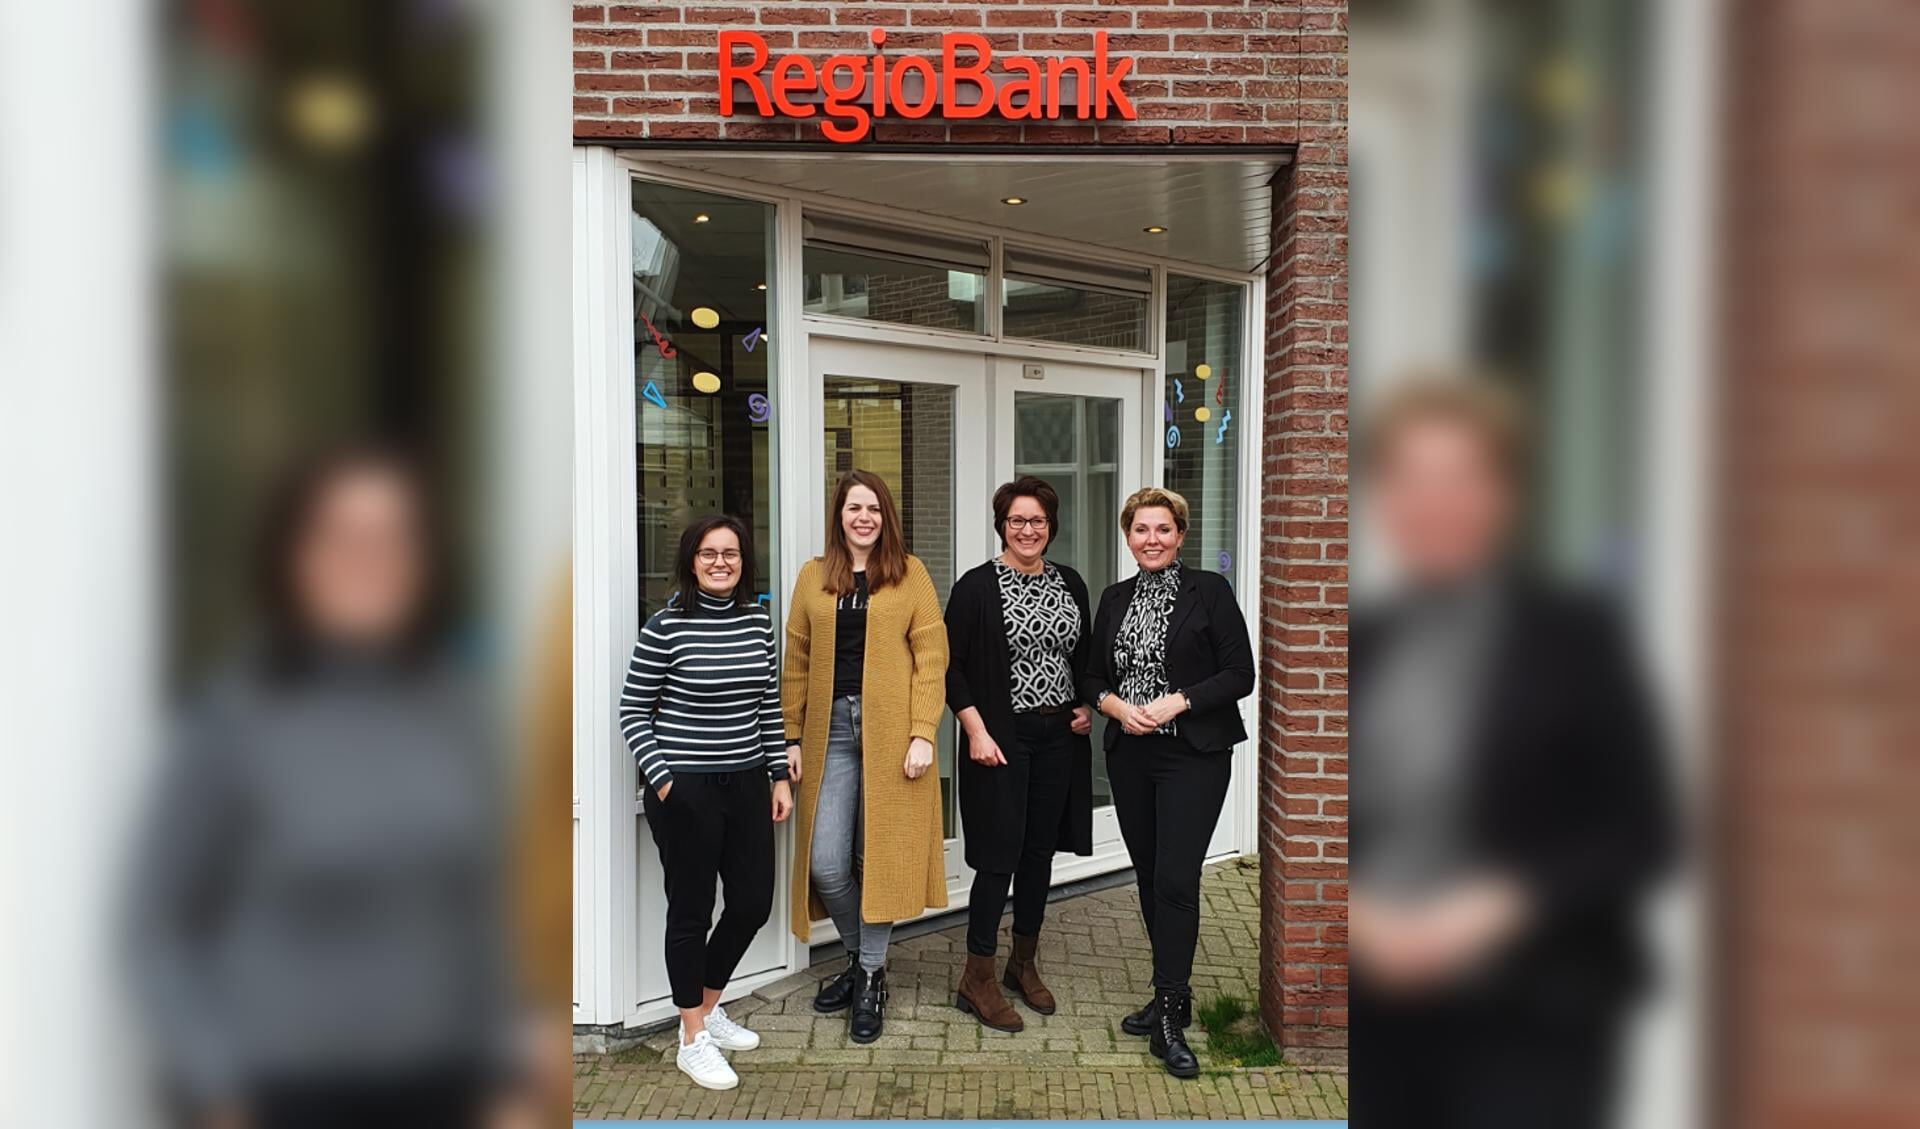 De medewerkers van Regiobank in Lunteren. 